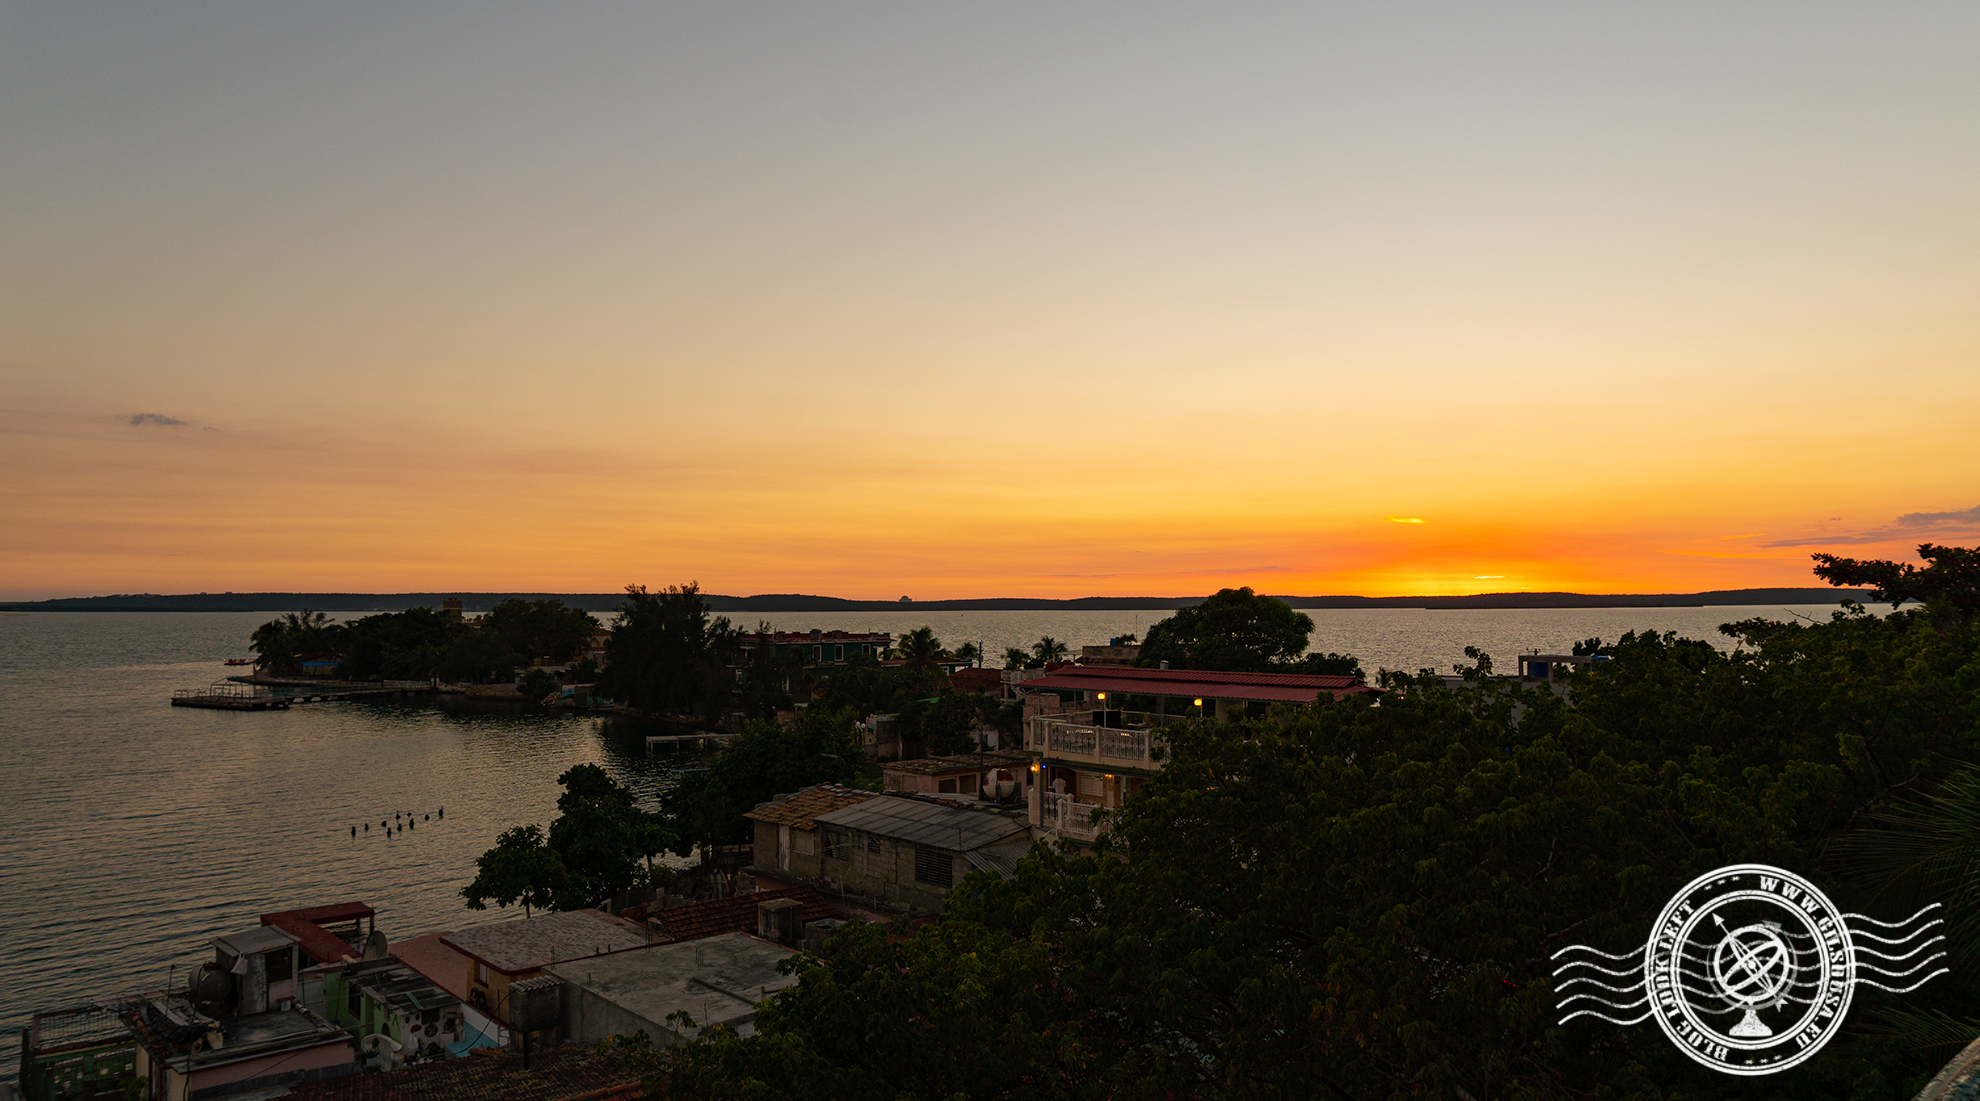 Sunset in Punta Gorda